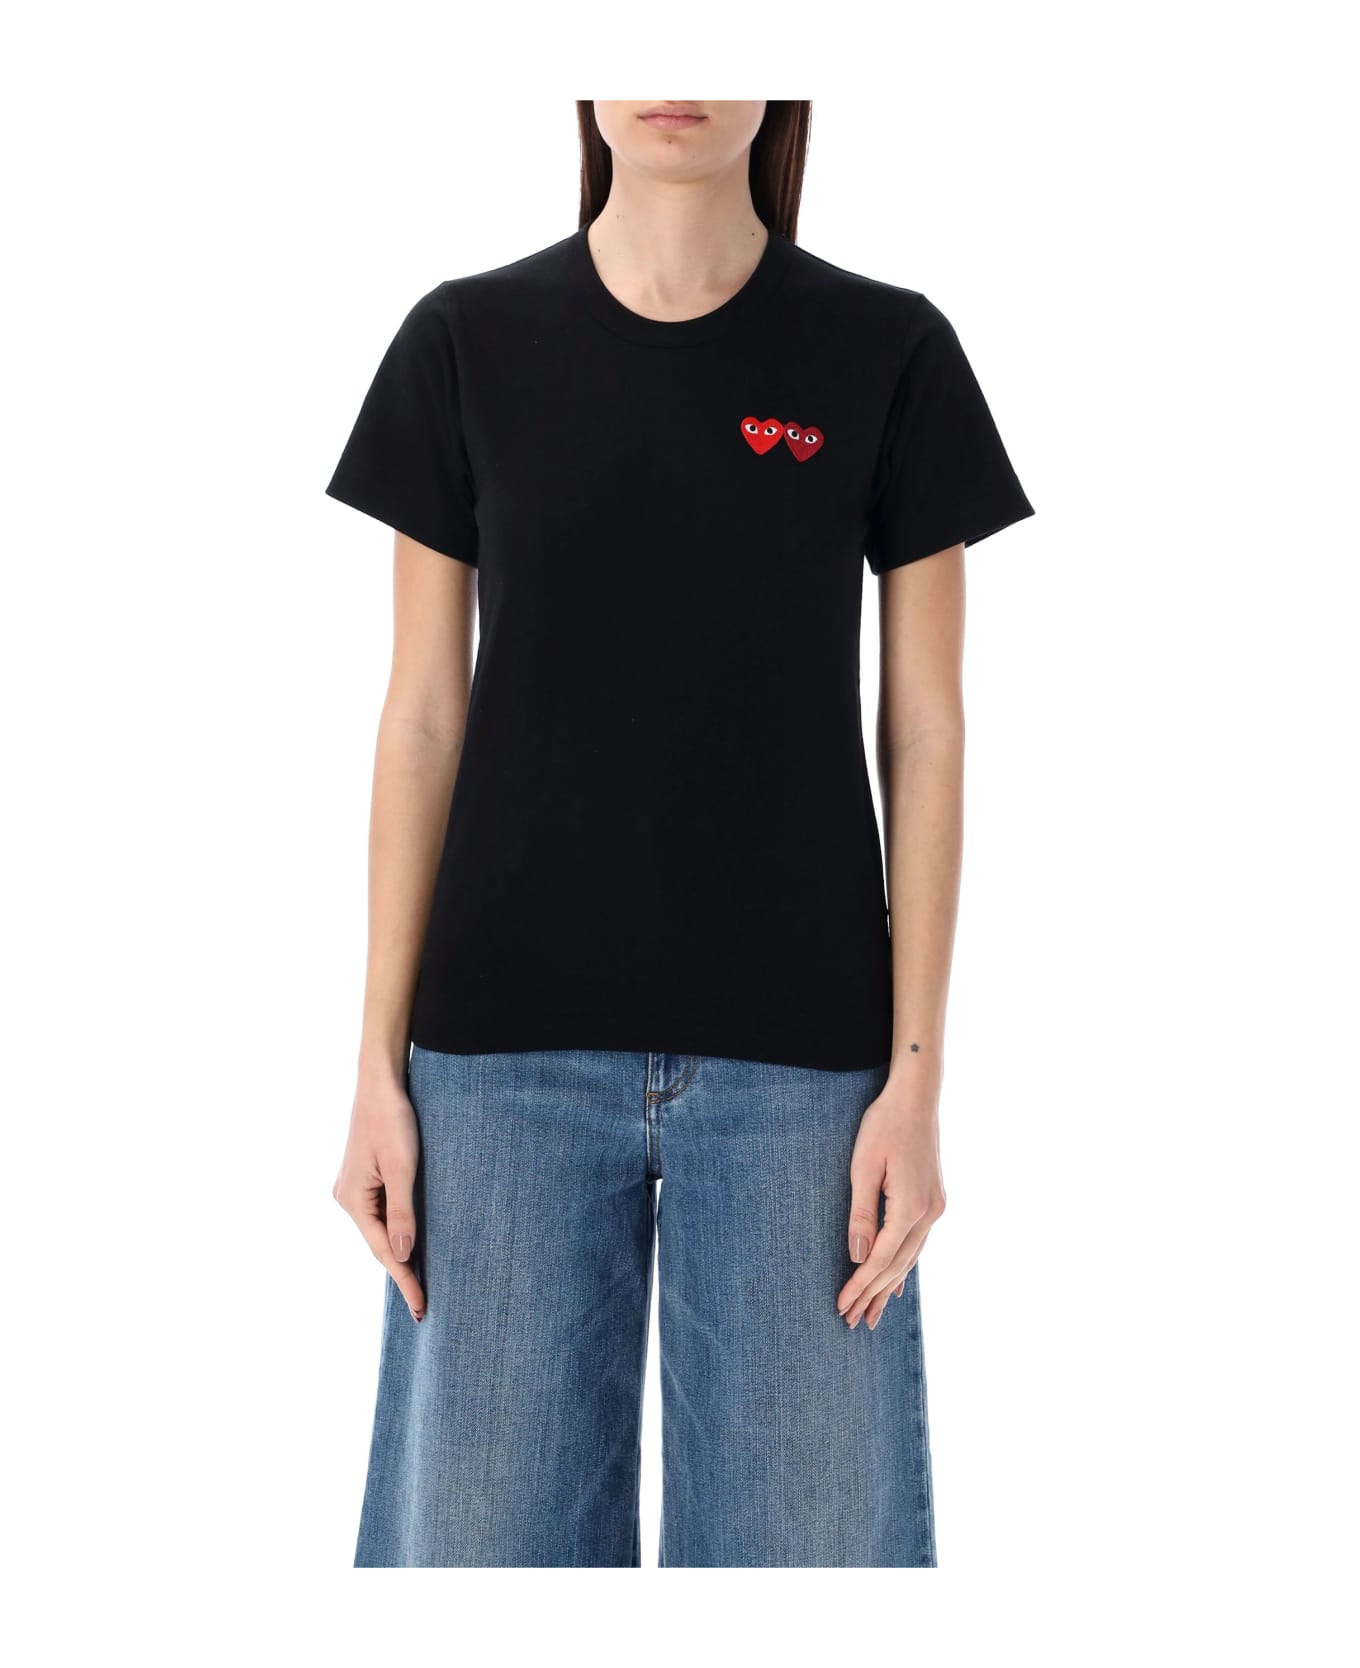 Comme des Garçons Play Double Heart T-shirt - BLACK Tシャツ